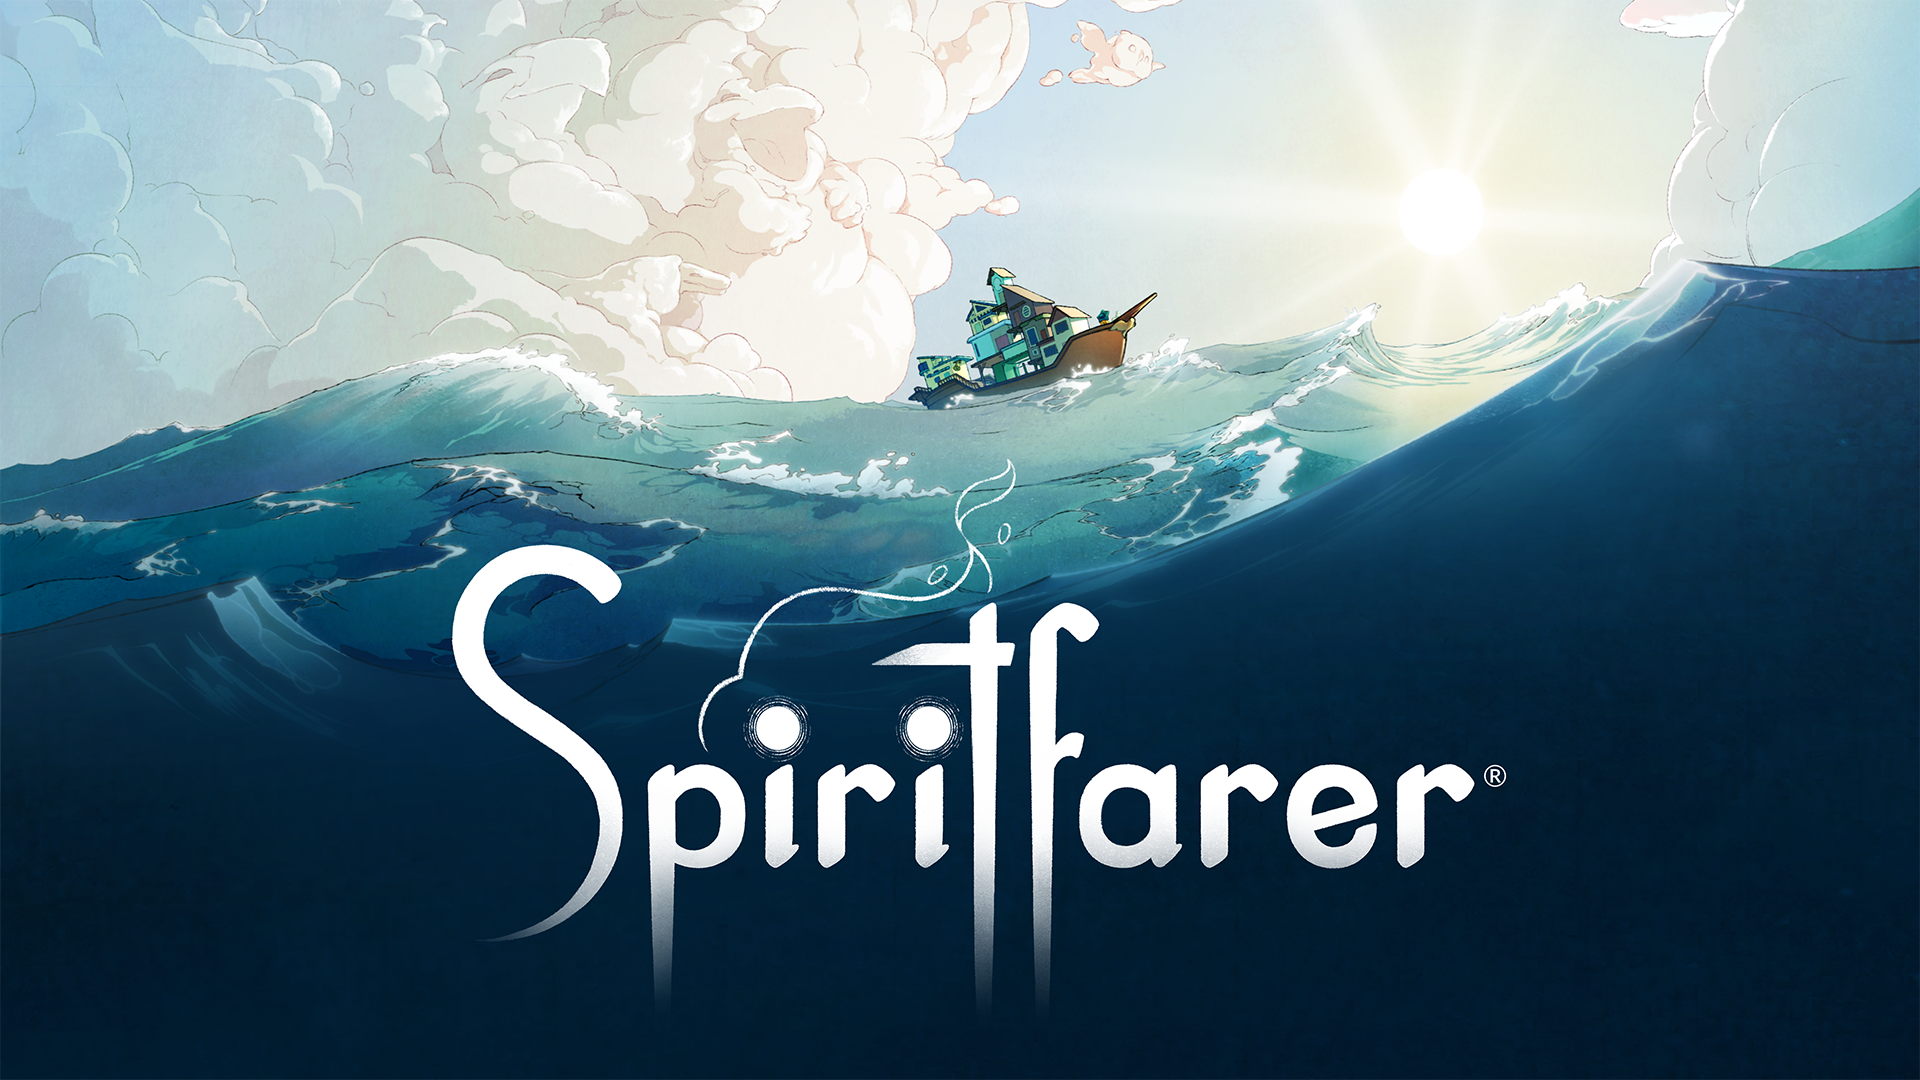 Spiritfarer-Netflix-Game